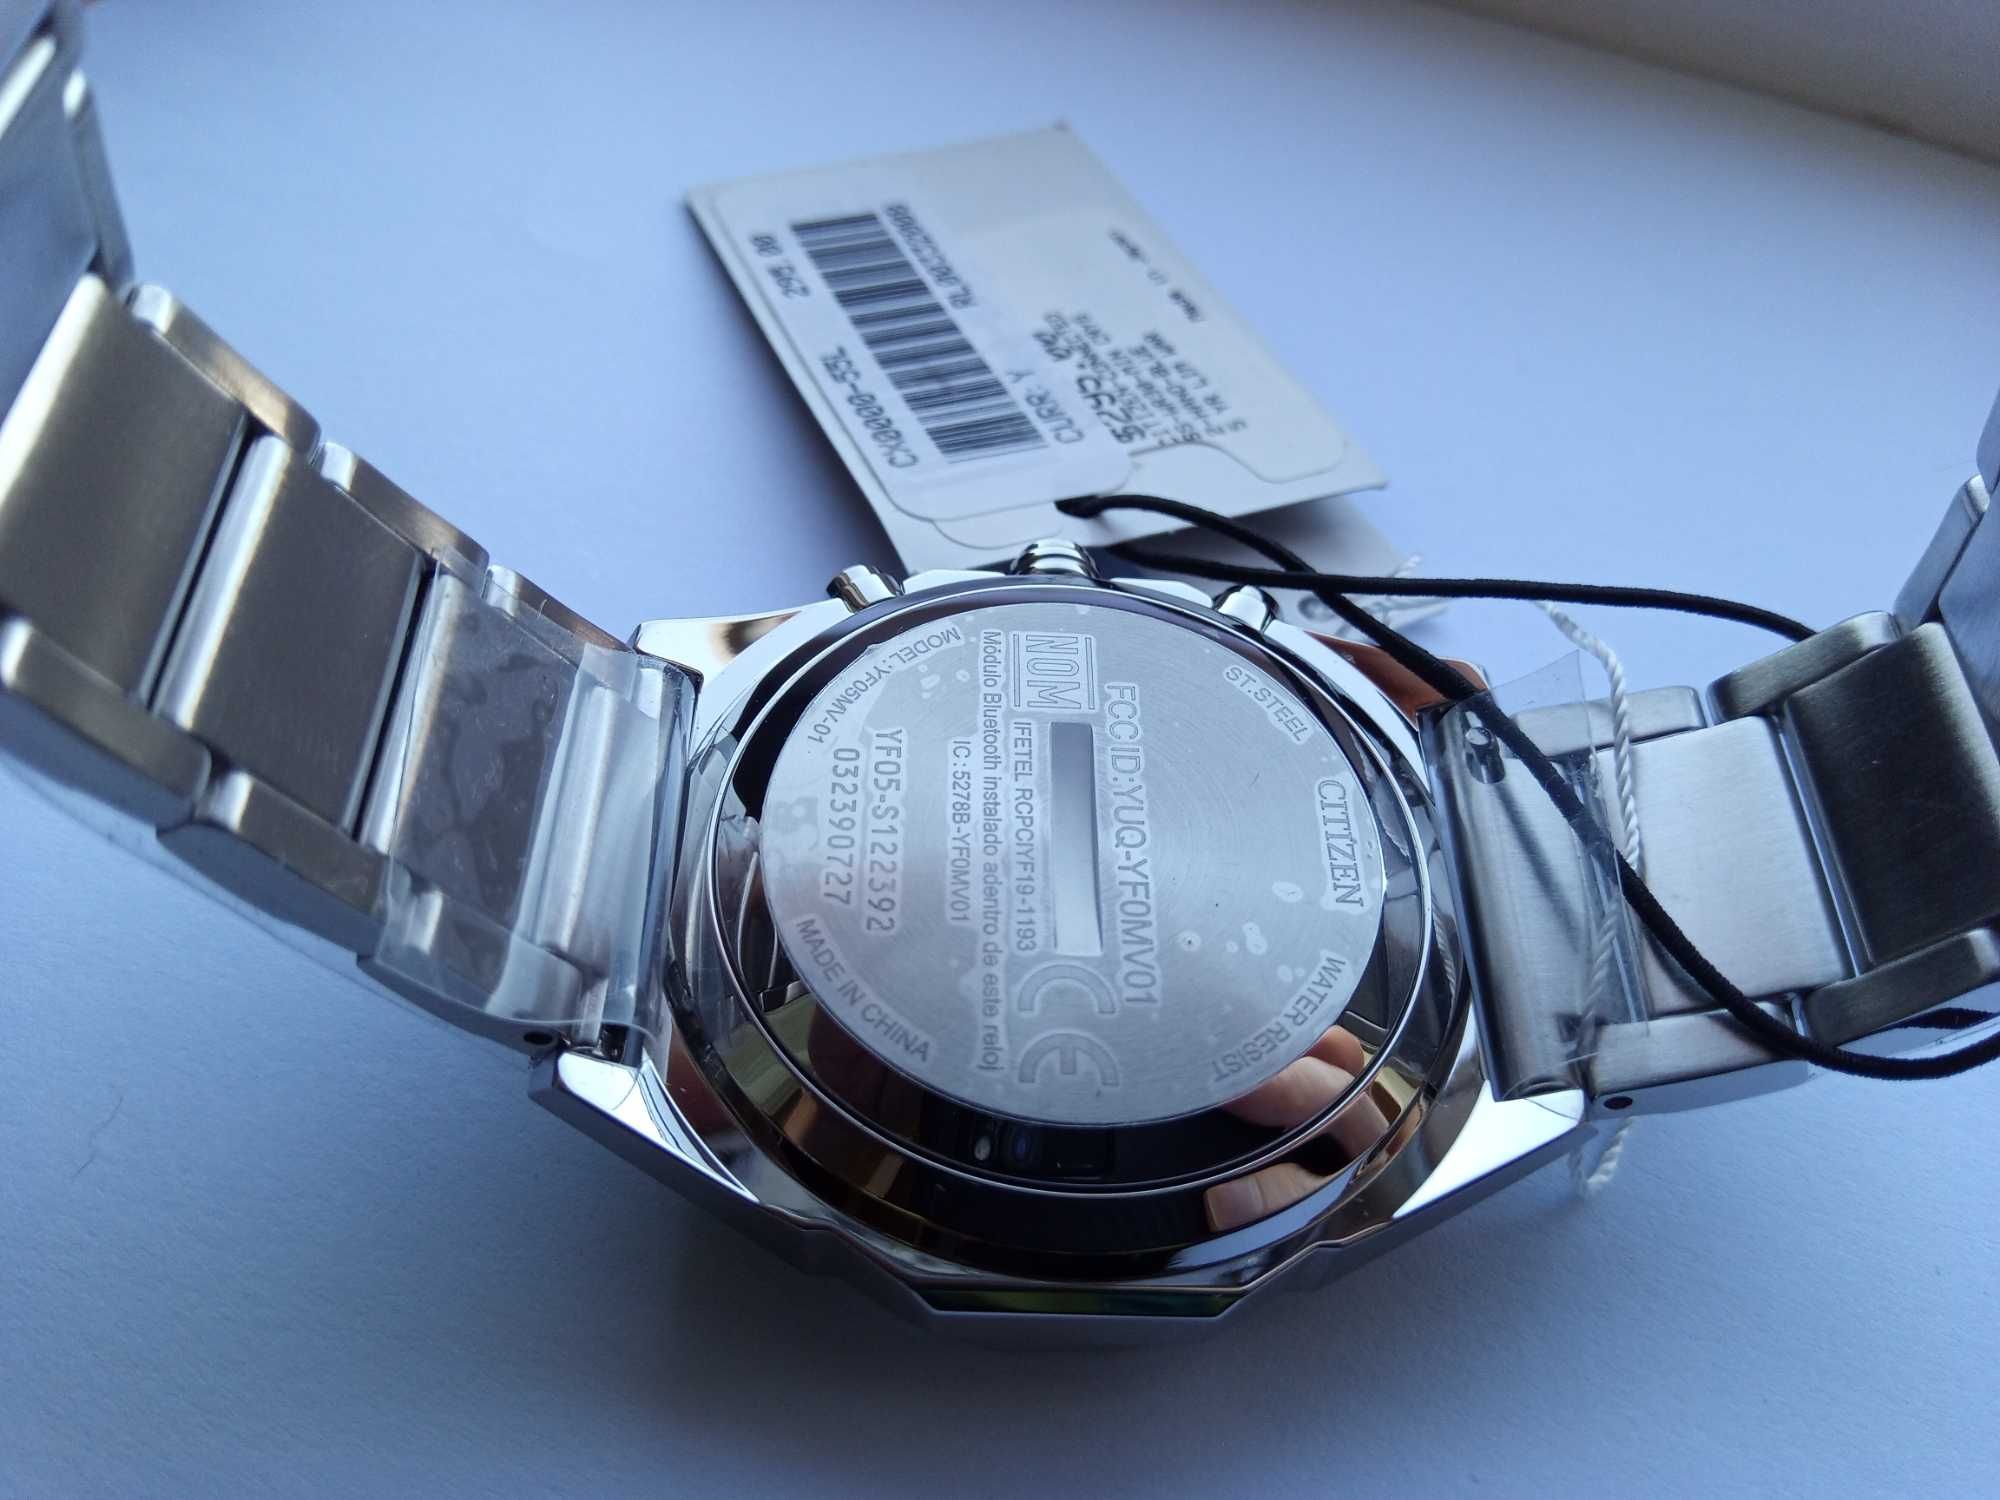 Японские умные часы Citizen CX0000-55L, $295, Bluetooth, оповещения